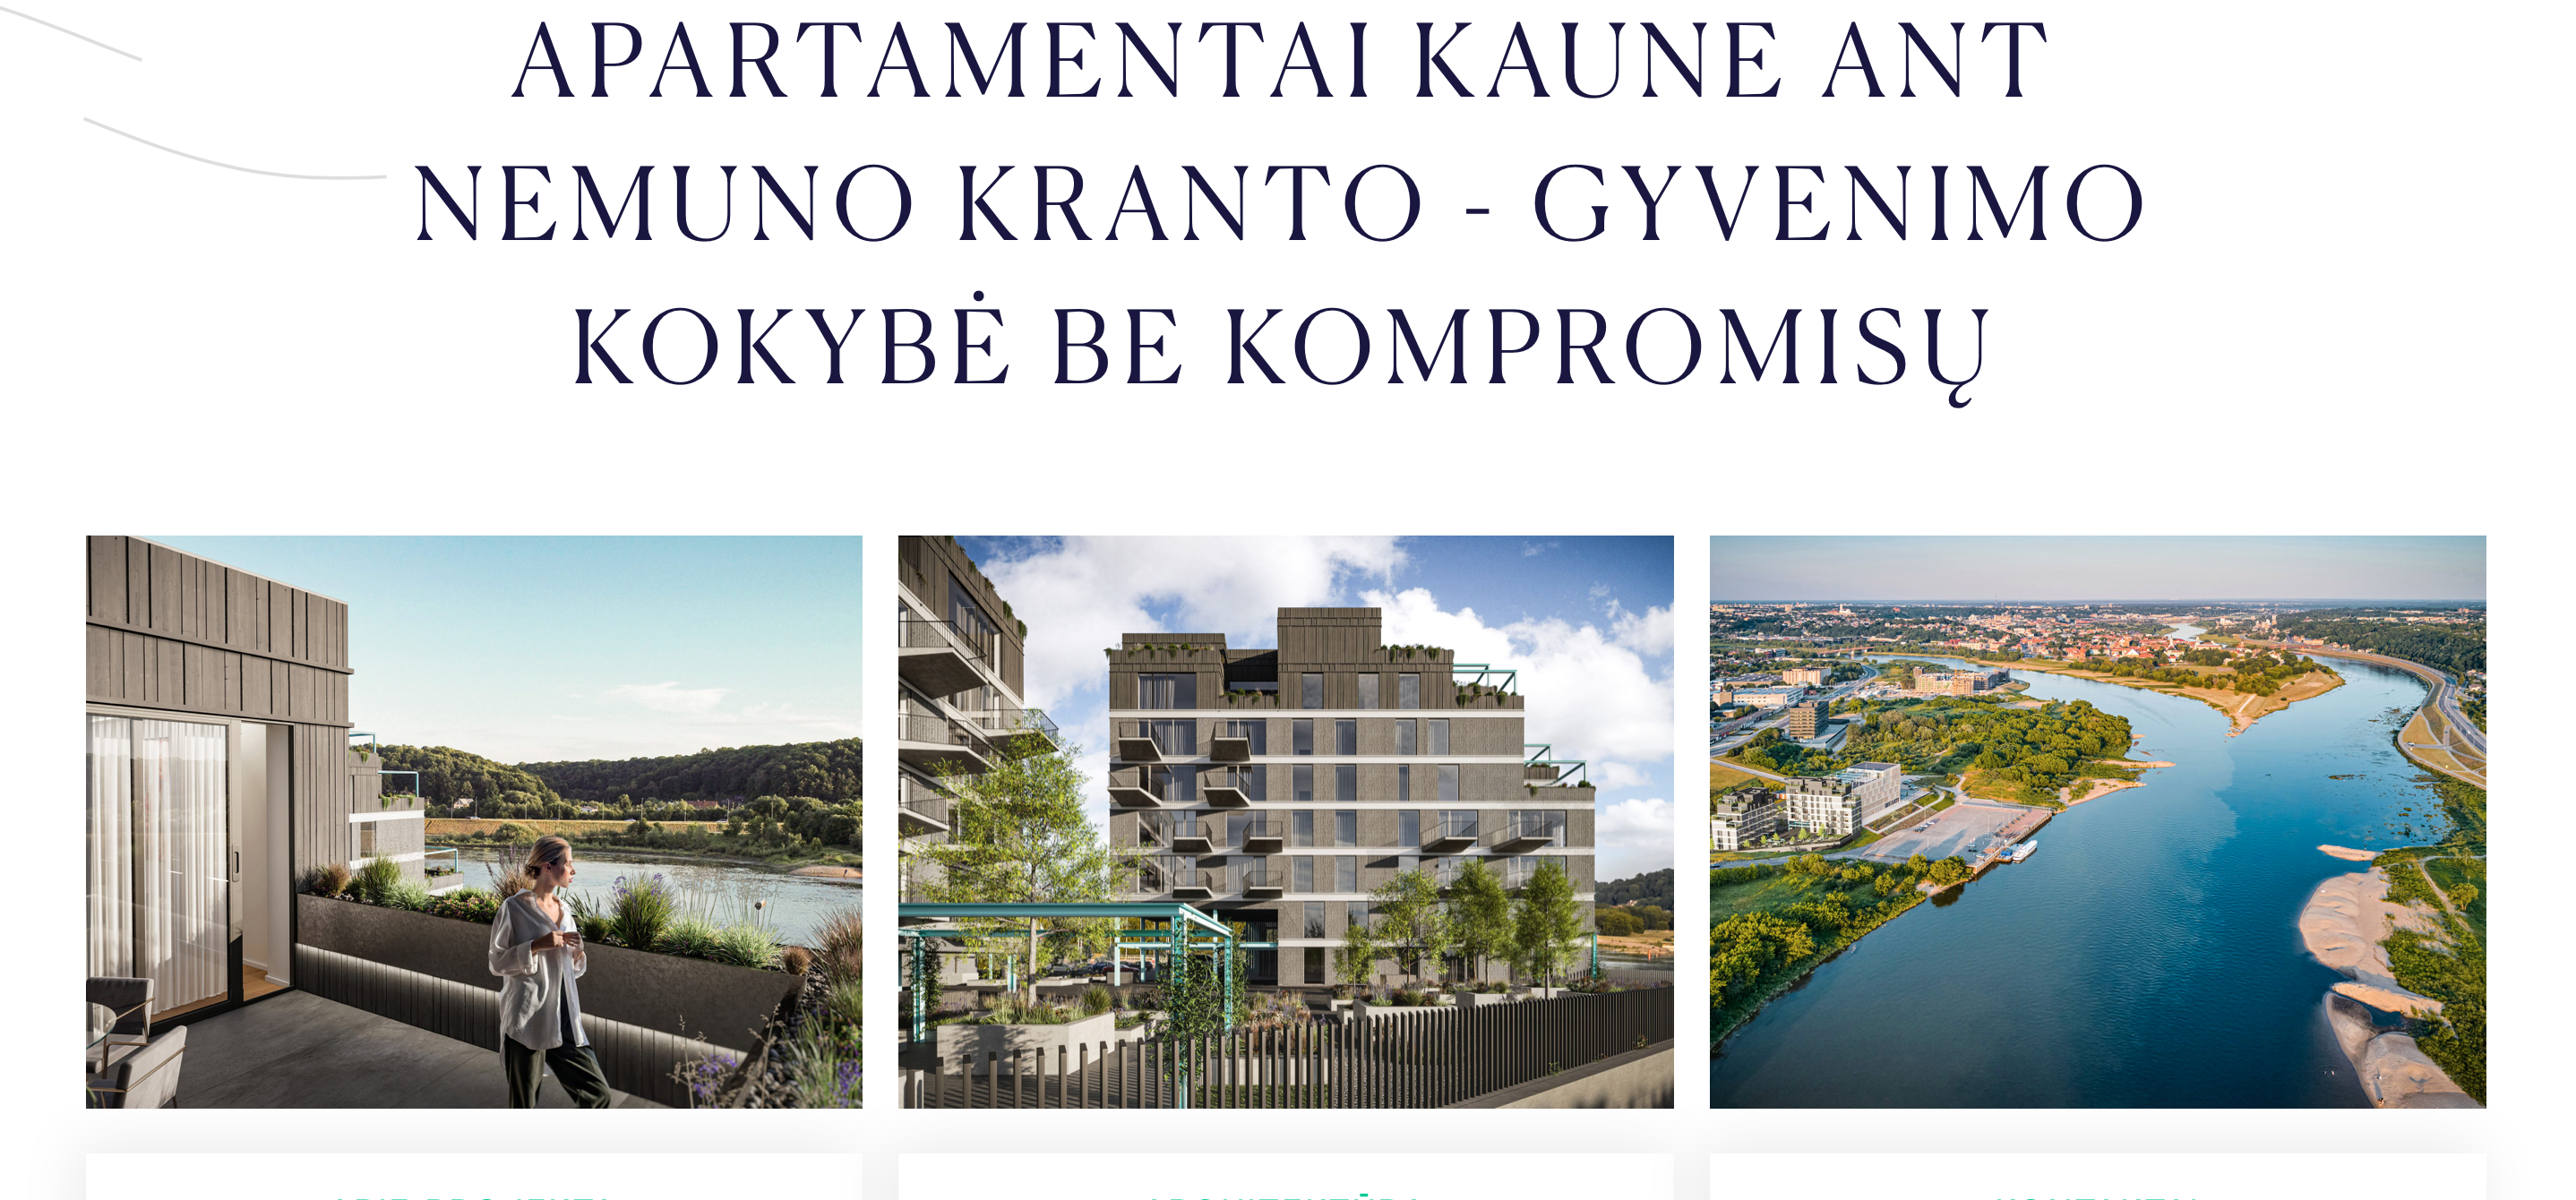 GPYR Upes Apartamentai Kaune website design for homepage slogan